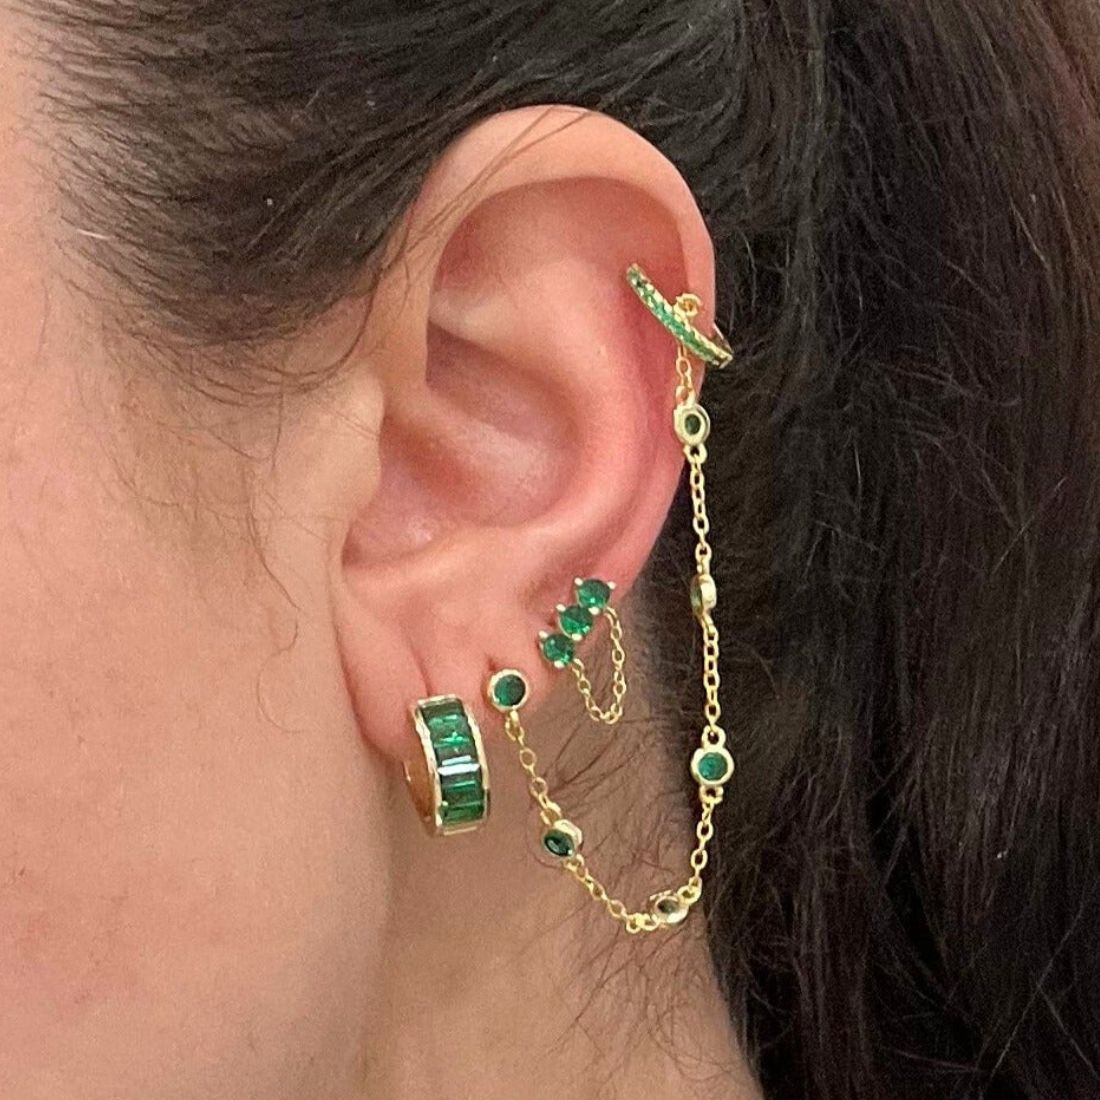 Buy SLUYNZ 925 Sterling Silver Cuff Earrings Chain for Women Asymmetric  Star Moon Earrings Crawler Earrings Dangling Chain at Amazon.in